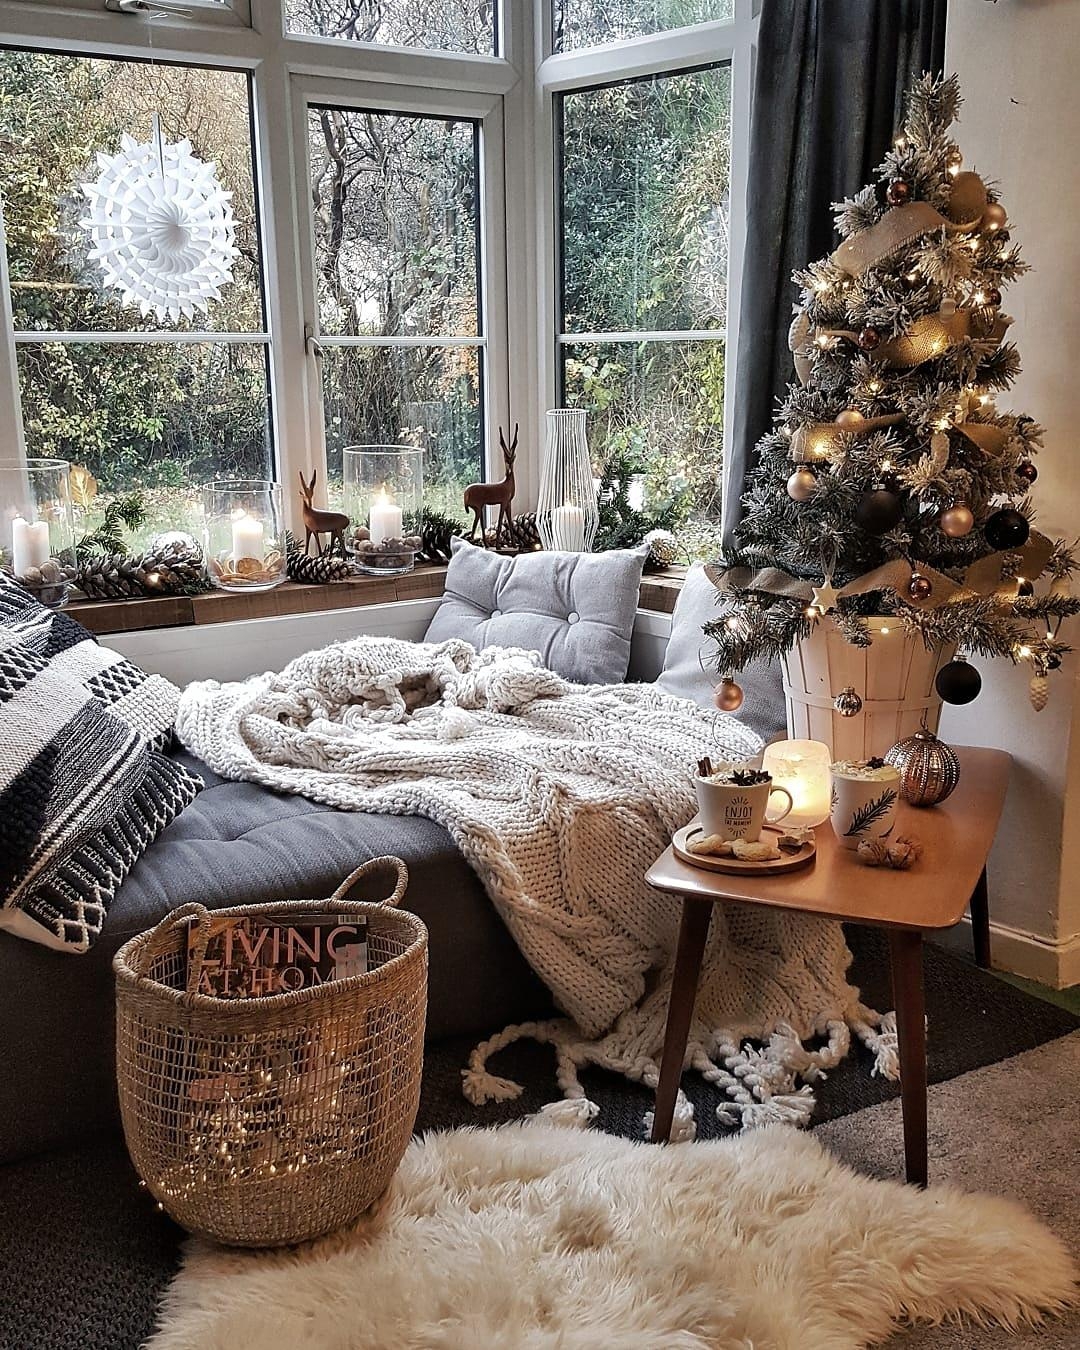 #interior #weihnachten #xmas #advent #wohnzimmer #weihnachtsbaum #couchliebt